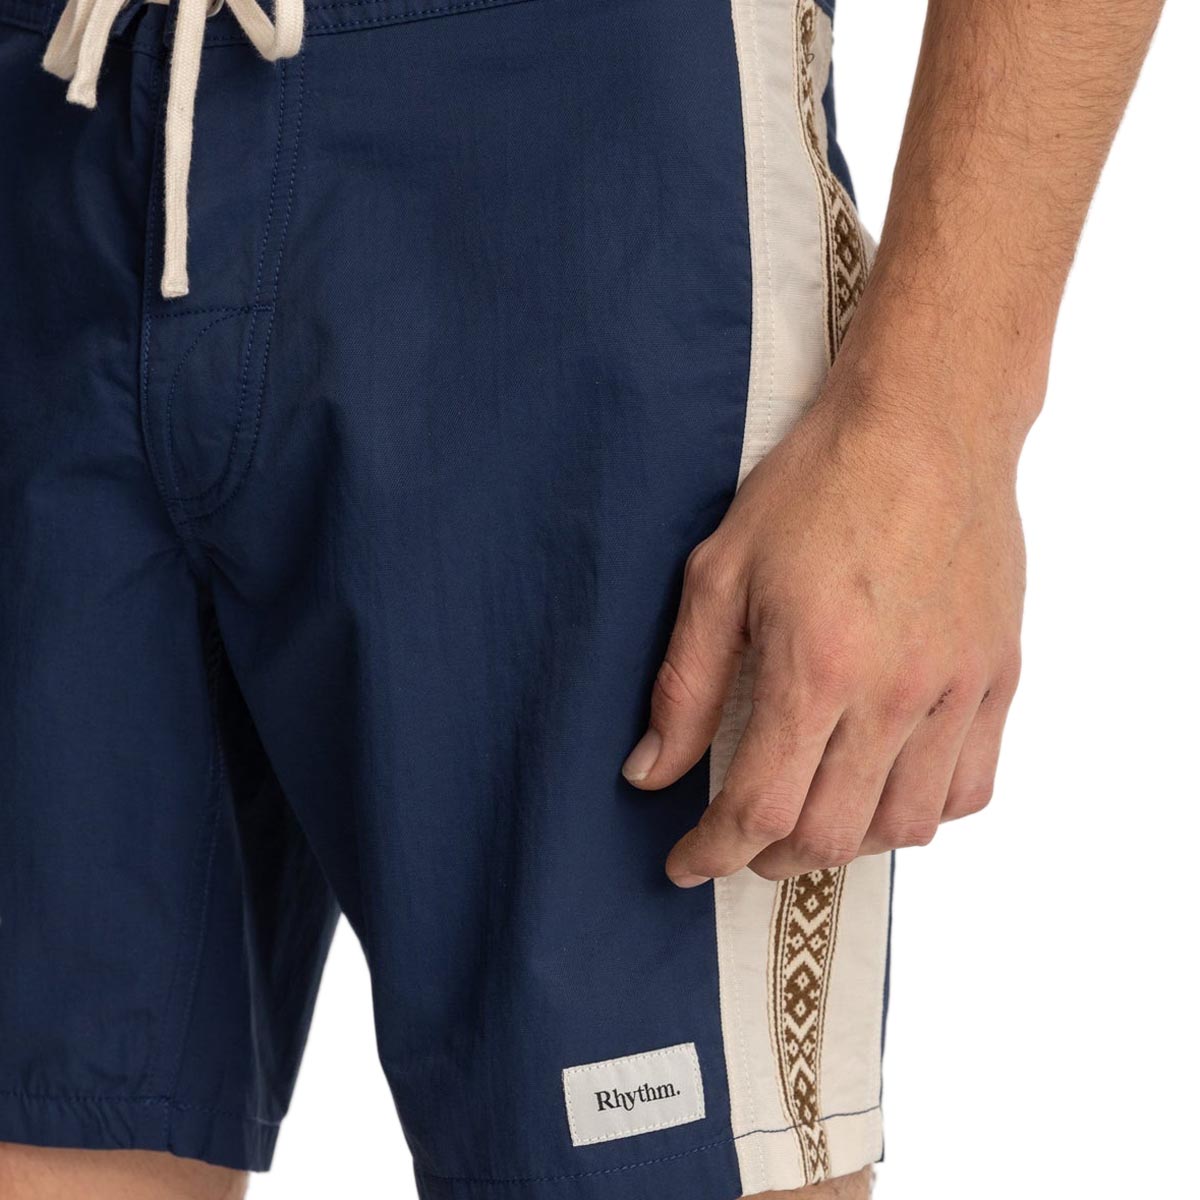 Rhythm Heritage Stripe Shorts - Navy image 3